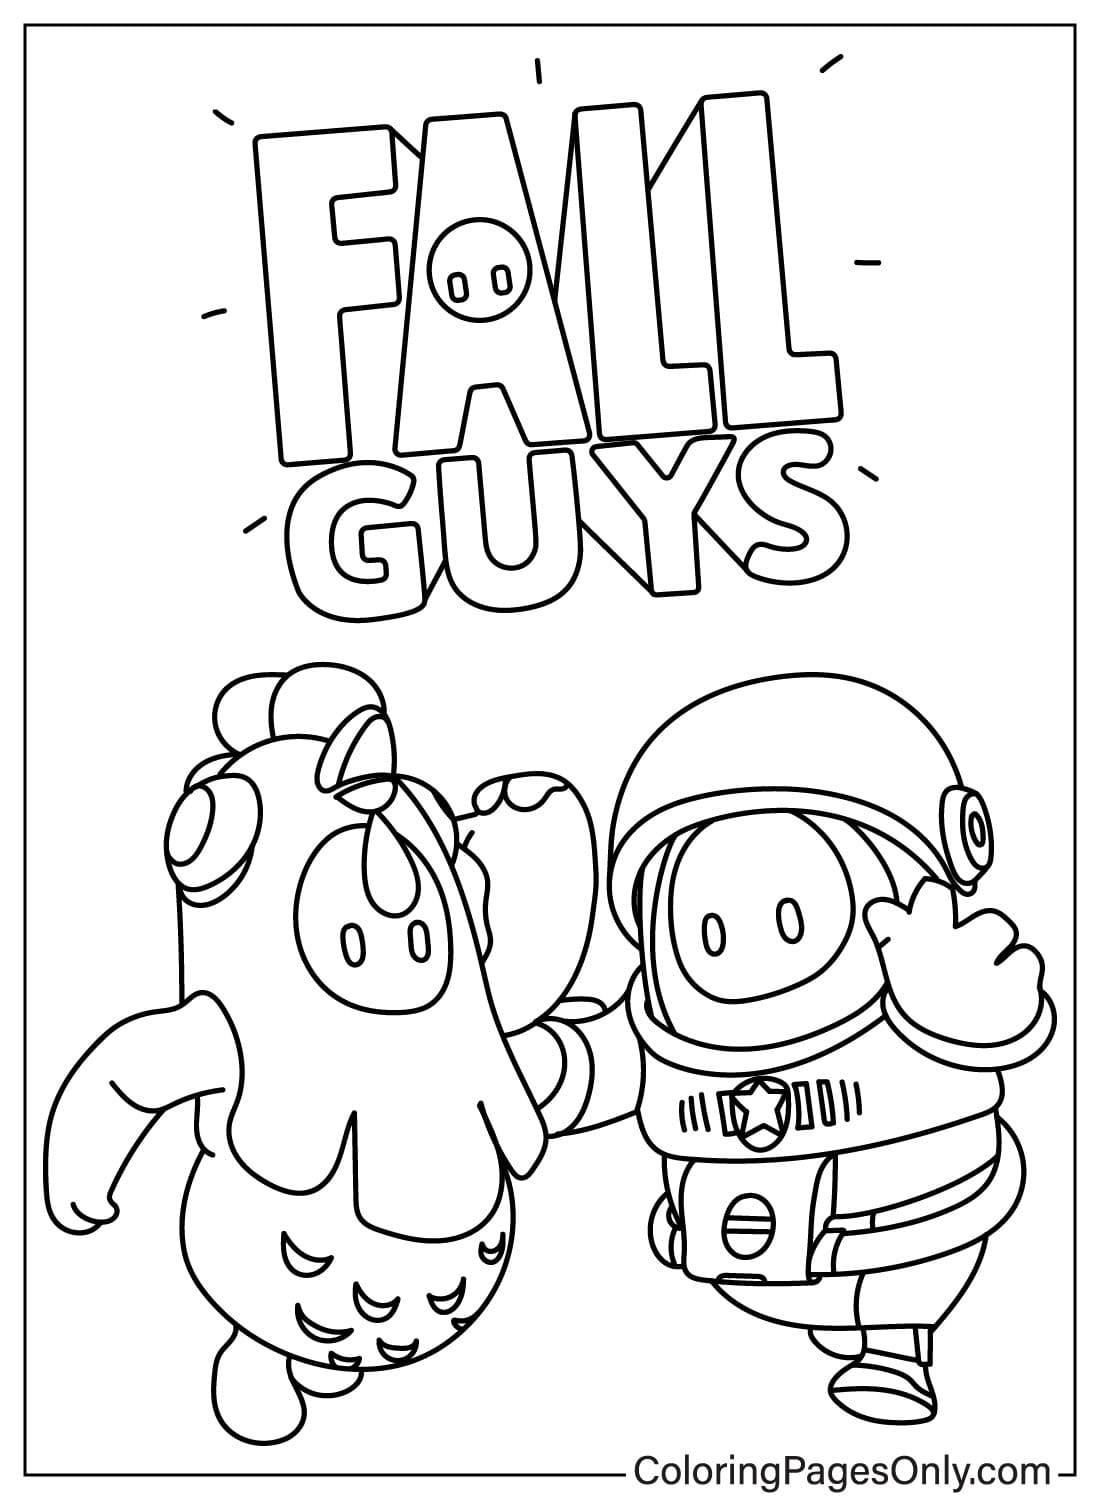 Астронавт Fall Guys и курица из Fall Guys